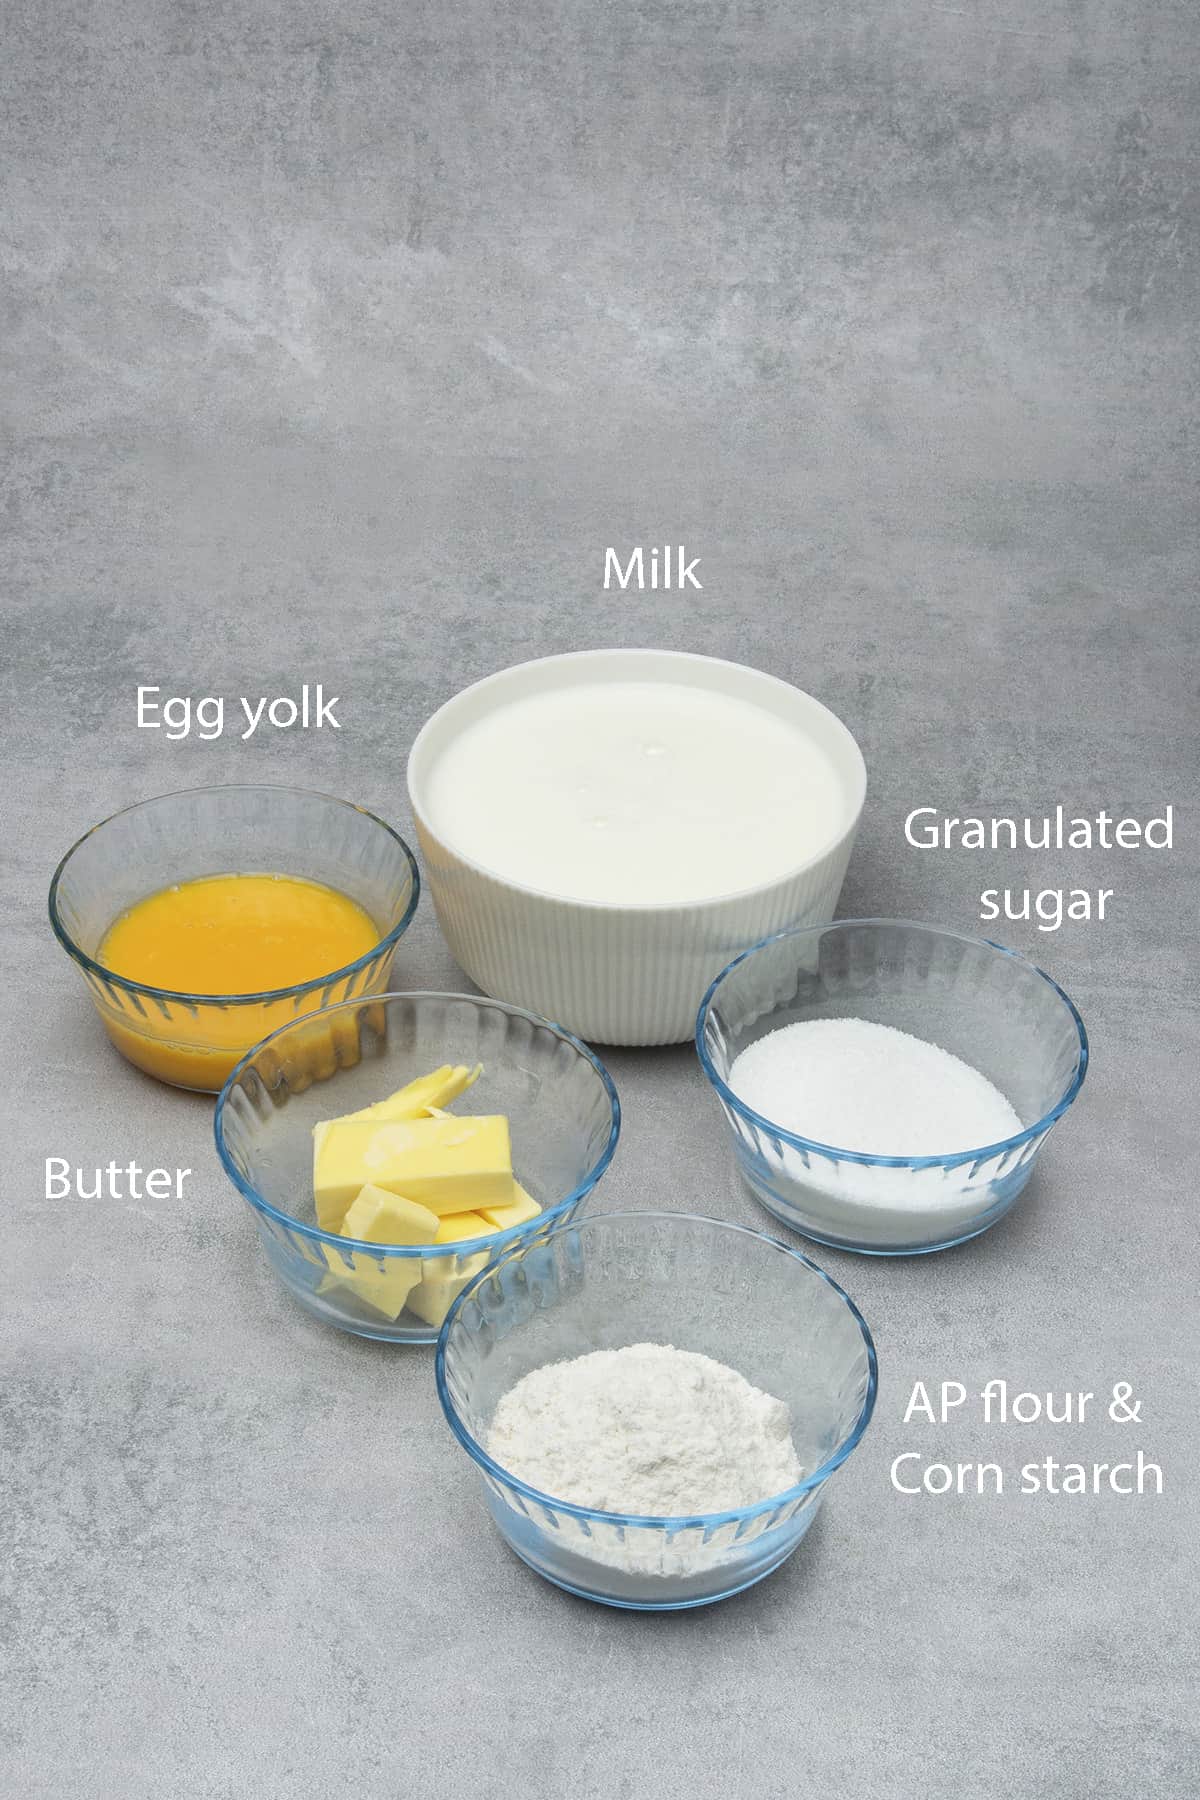 Pastry cream ingredients.